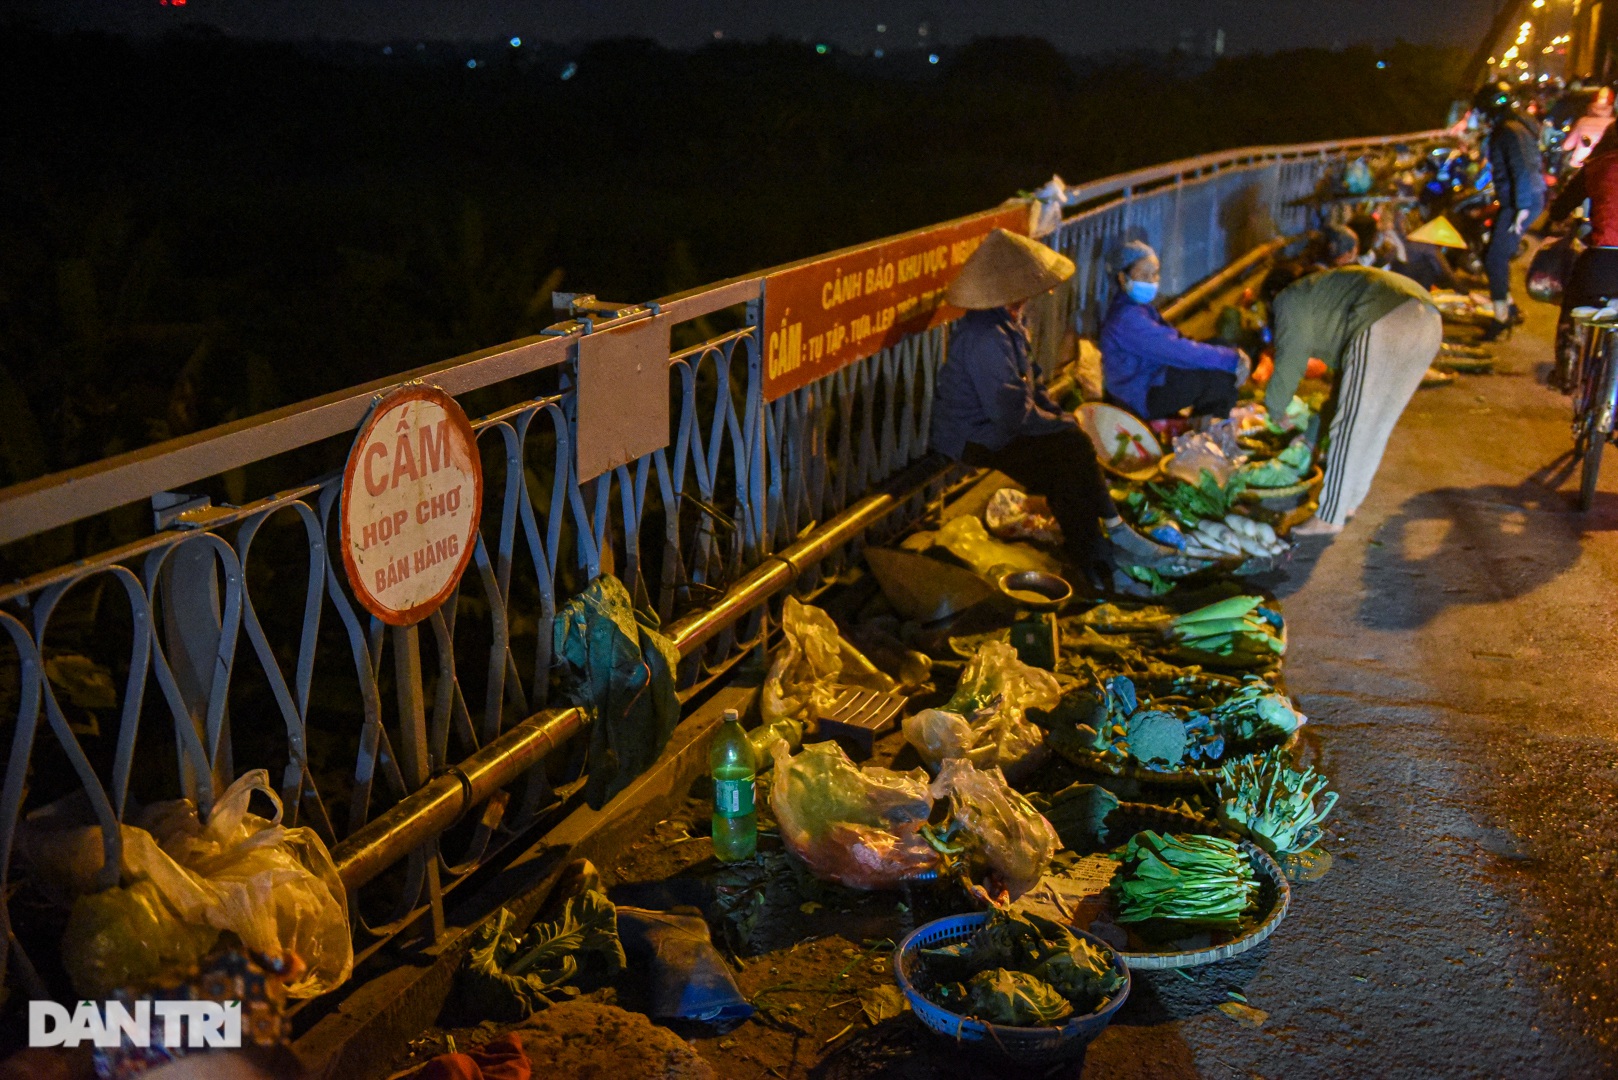 Cảnh họp chợ lộn xộn, giao thông ùn ứ trên cây cầu trăm tuổi ở Hà Nội - 5